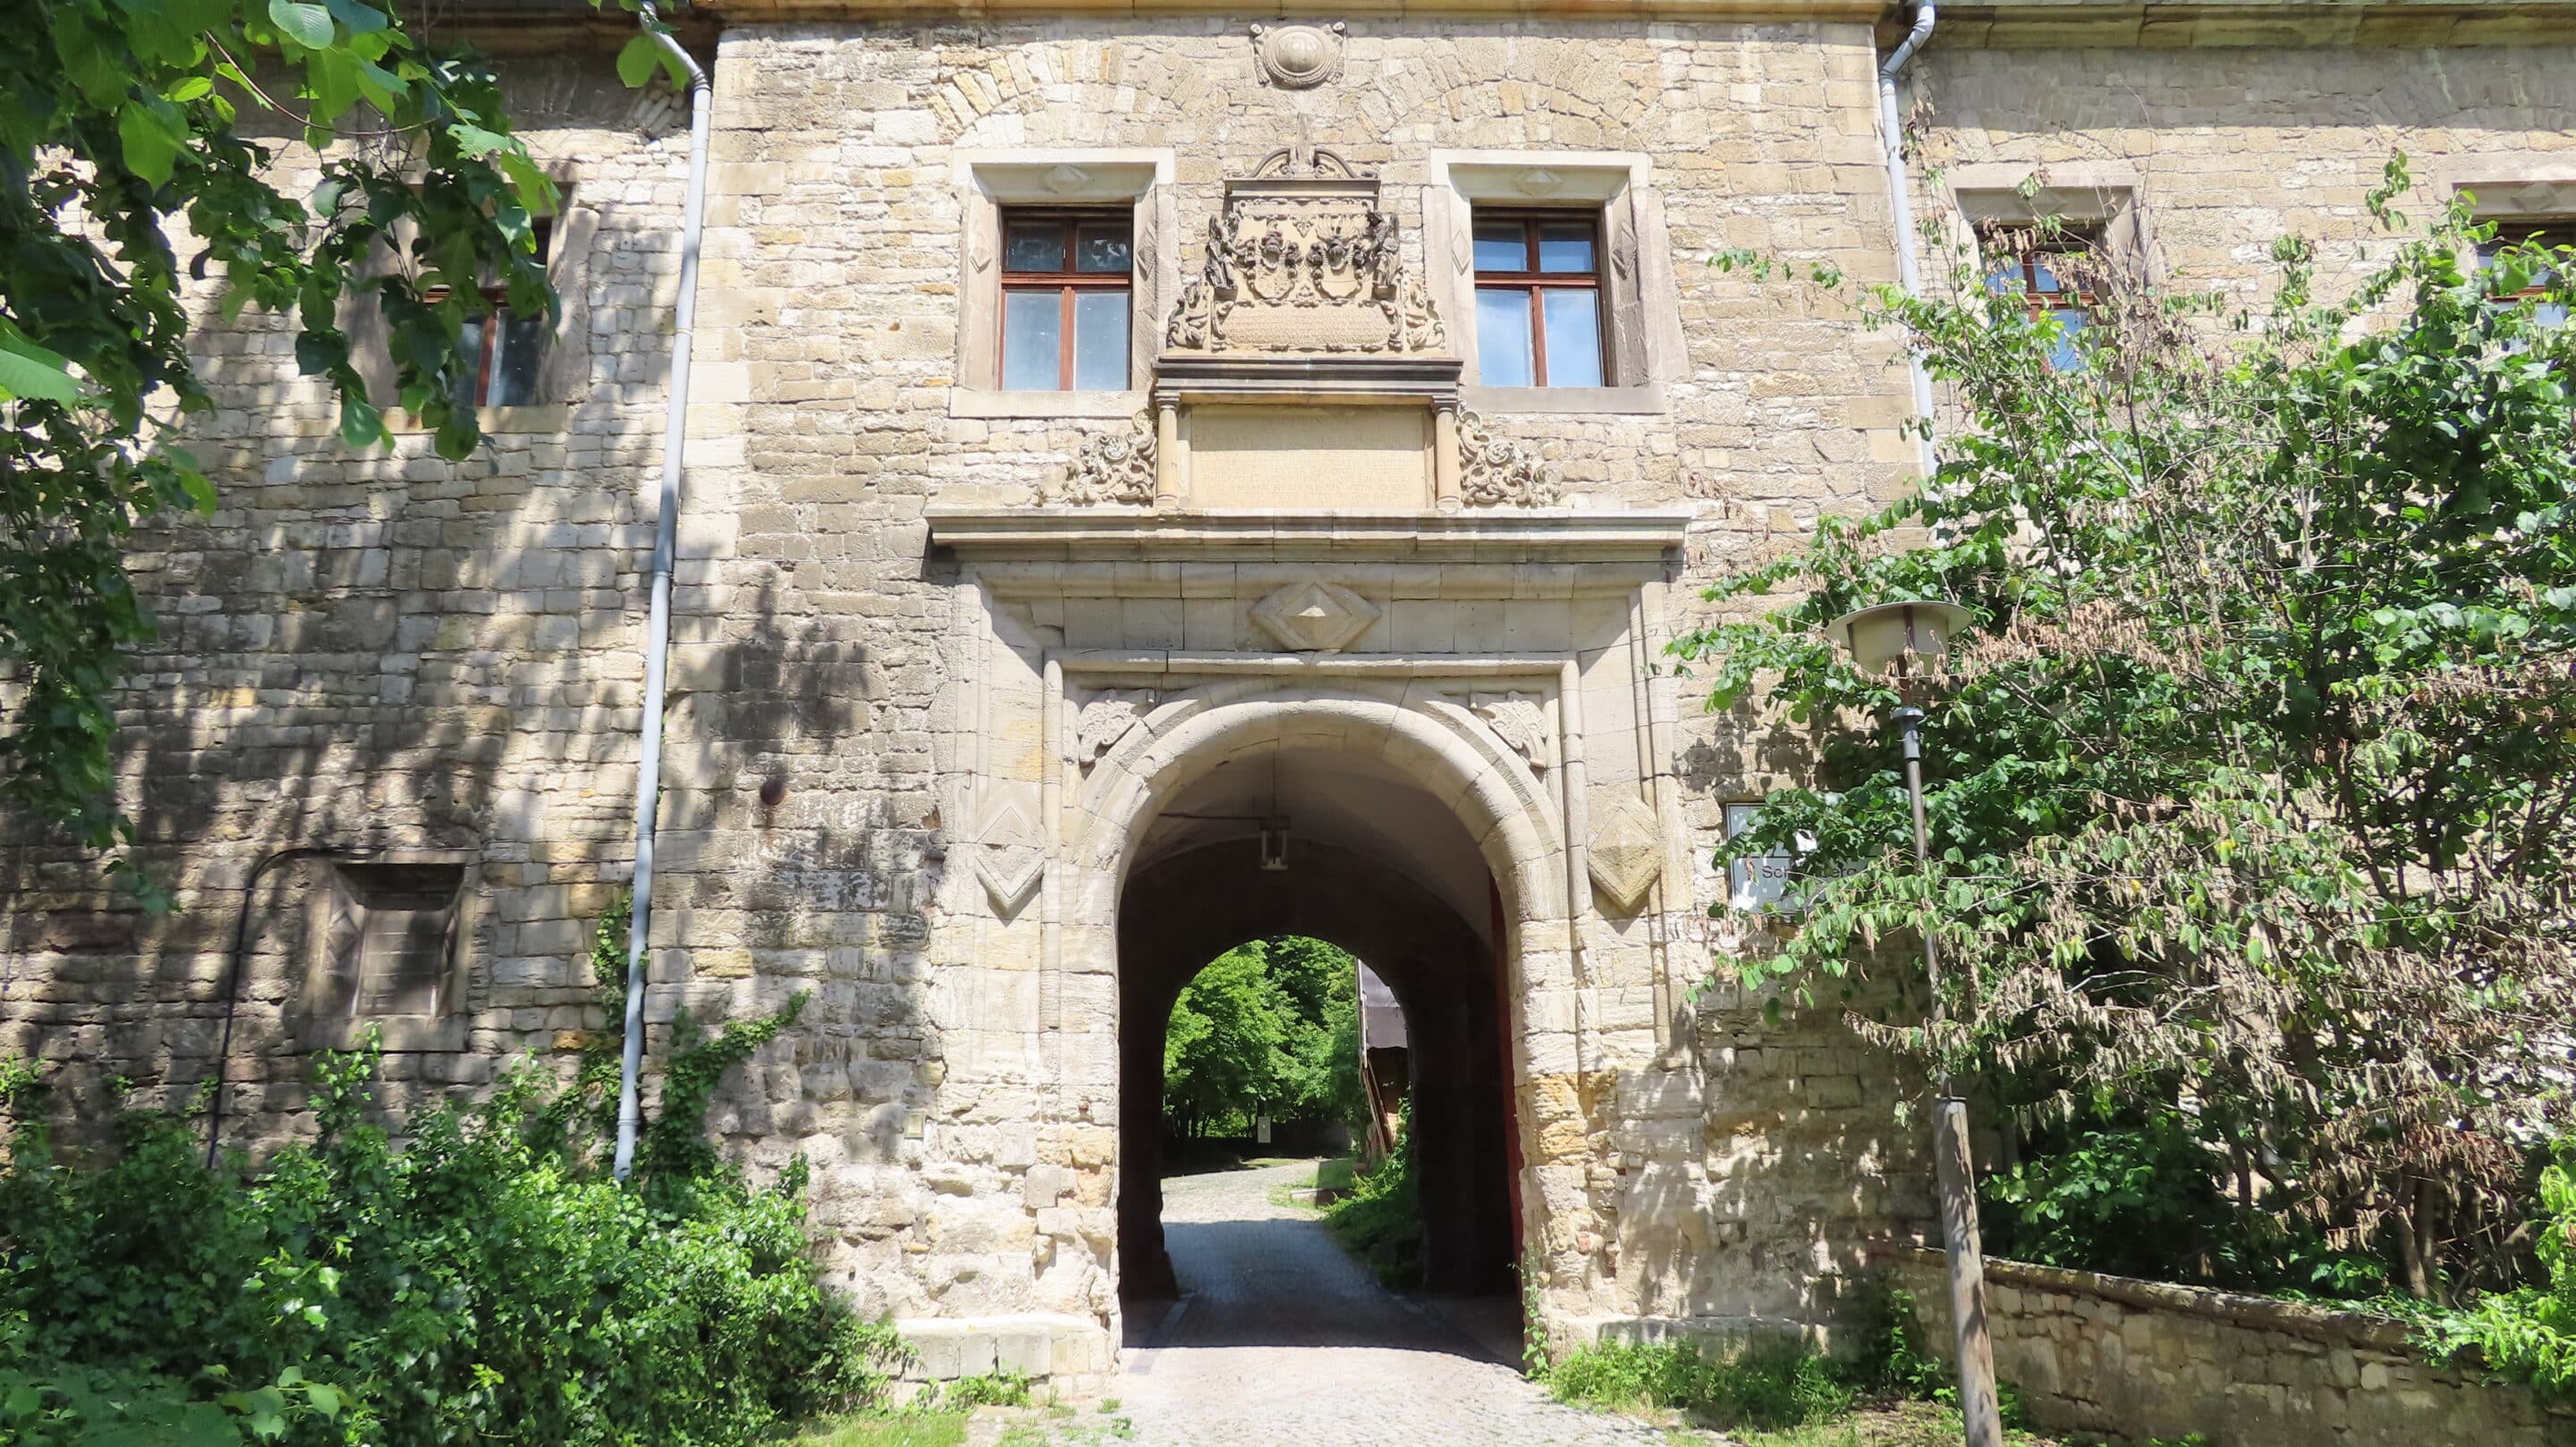 Eingang mit Wappen und Spruch am Schloss Beichlingen an der Schmücke in Thüringen.